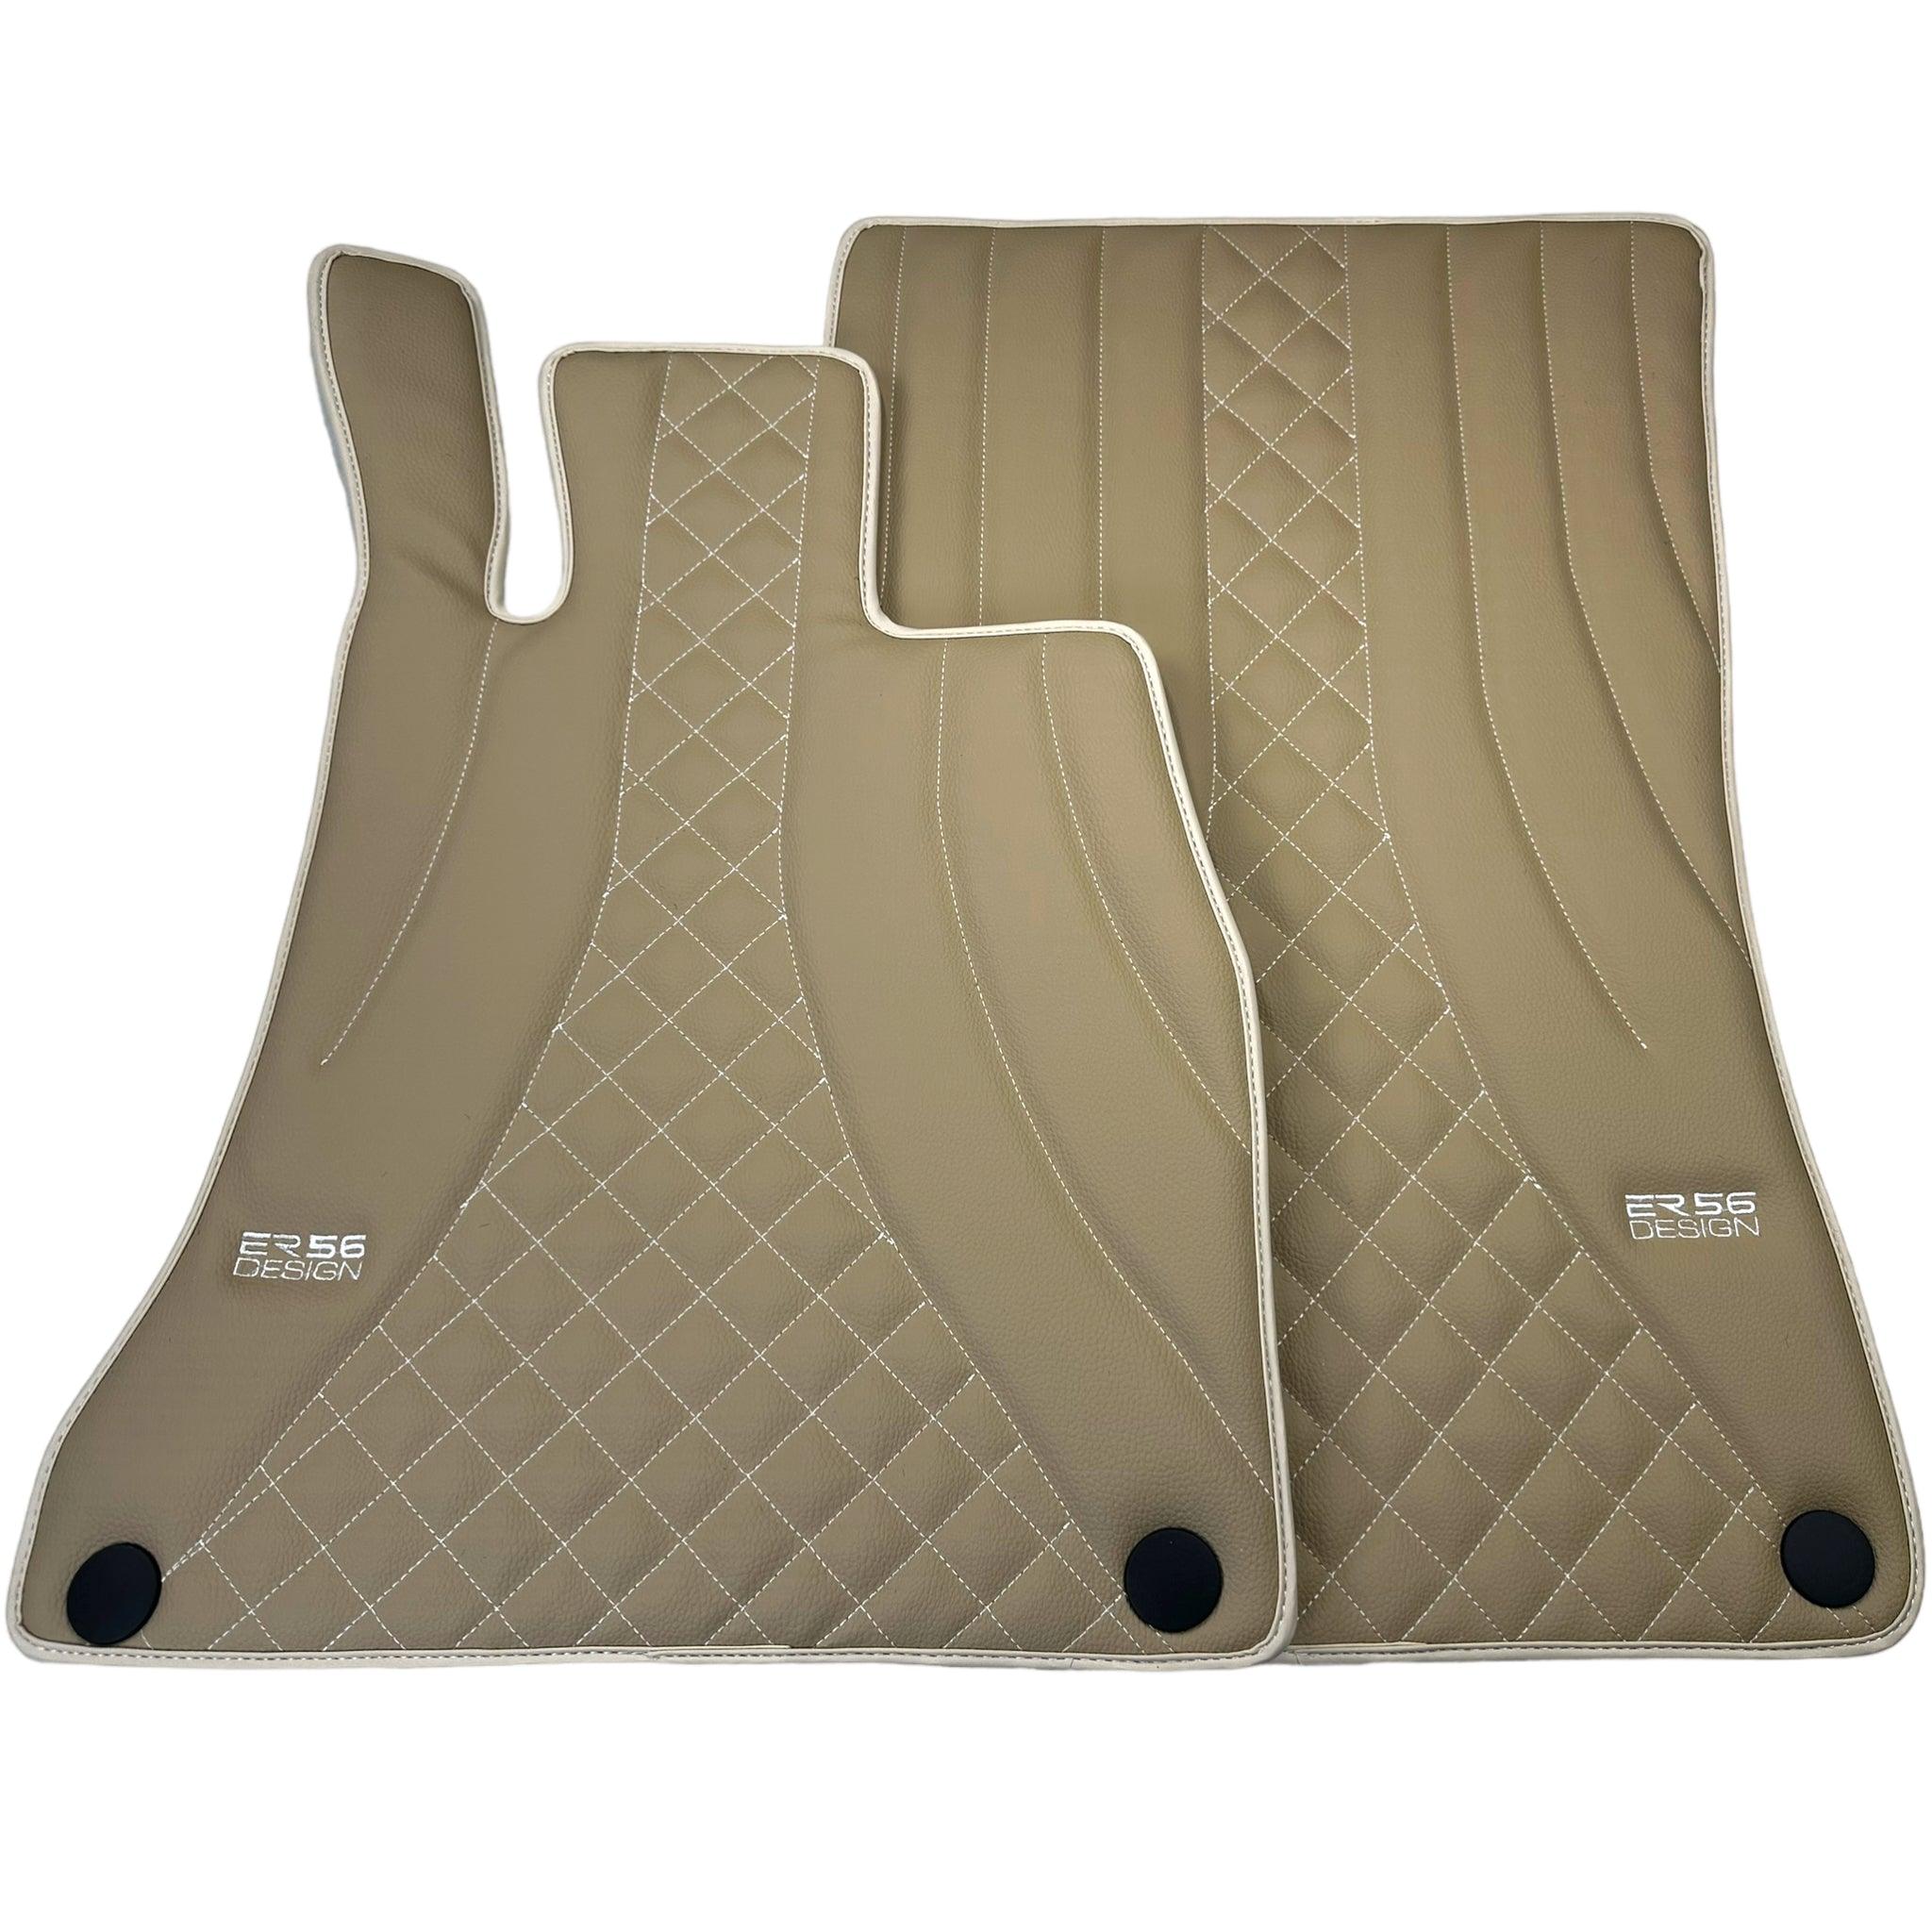 Beige Leather Floor Mats For Mercedes Benz S-Class V222 (2013-2020) Long Wheelbase